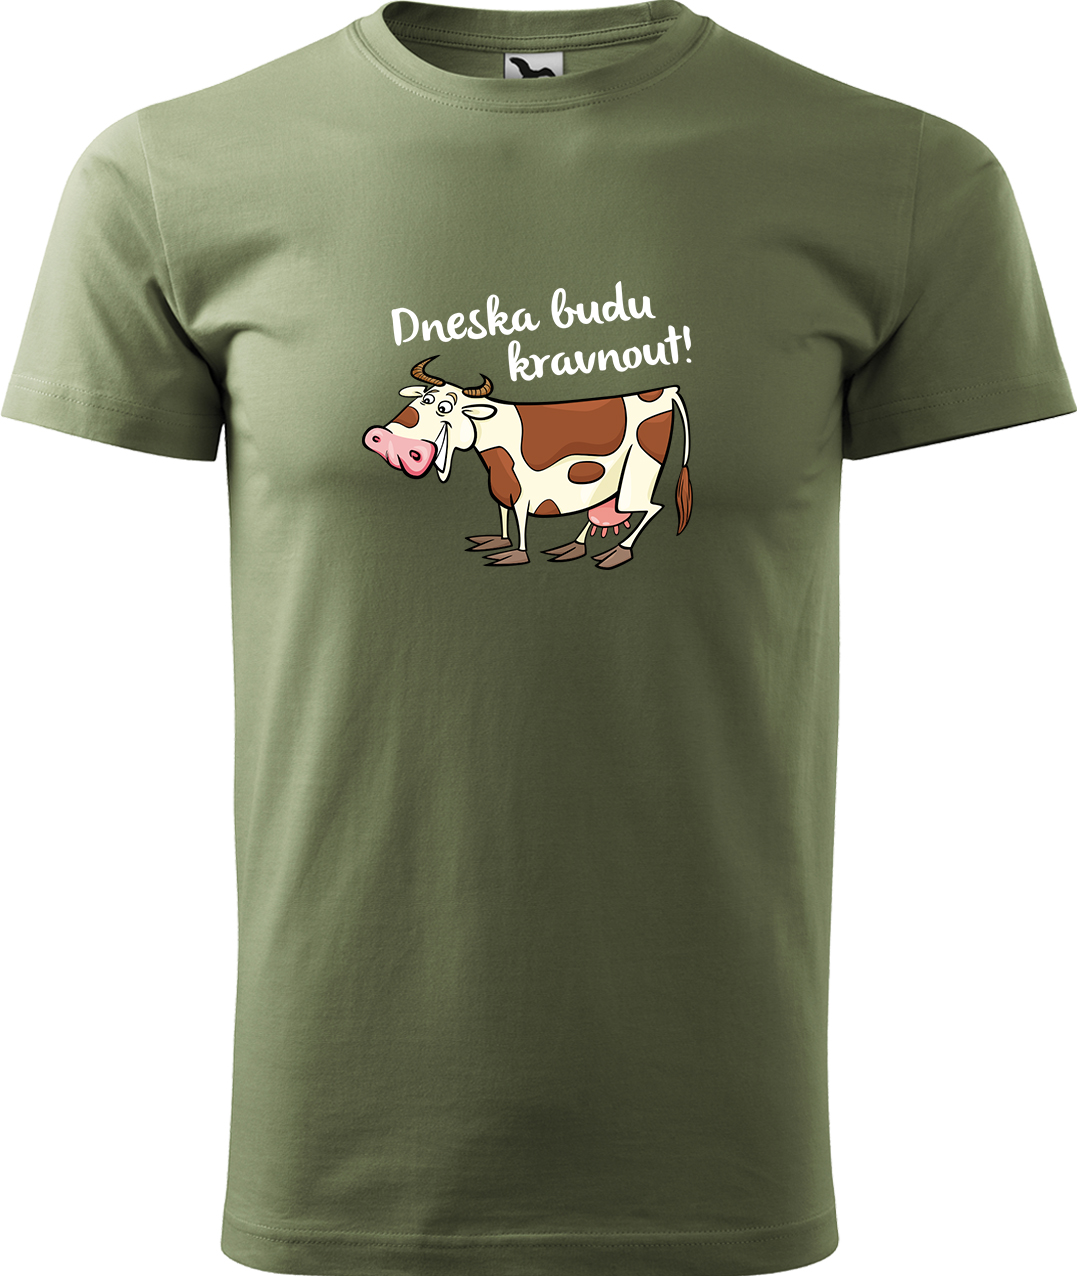 Pánské tričko s krávou - Dneska budu kravnout! Velikost: M, Barva: Světlá khaki (28), Střih: pánský